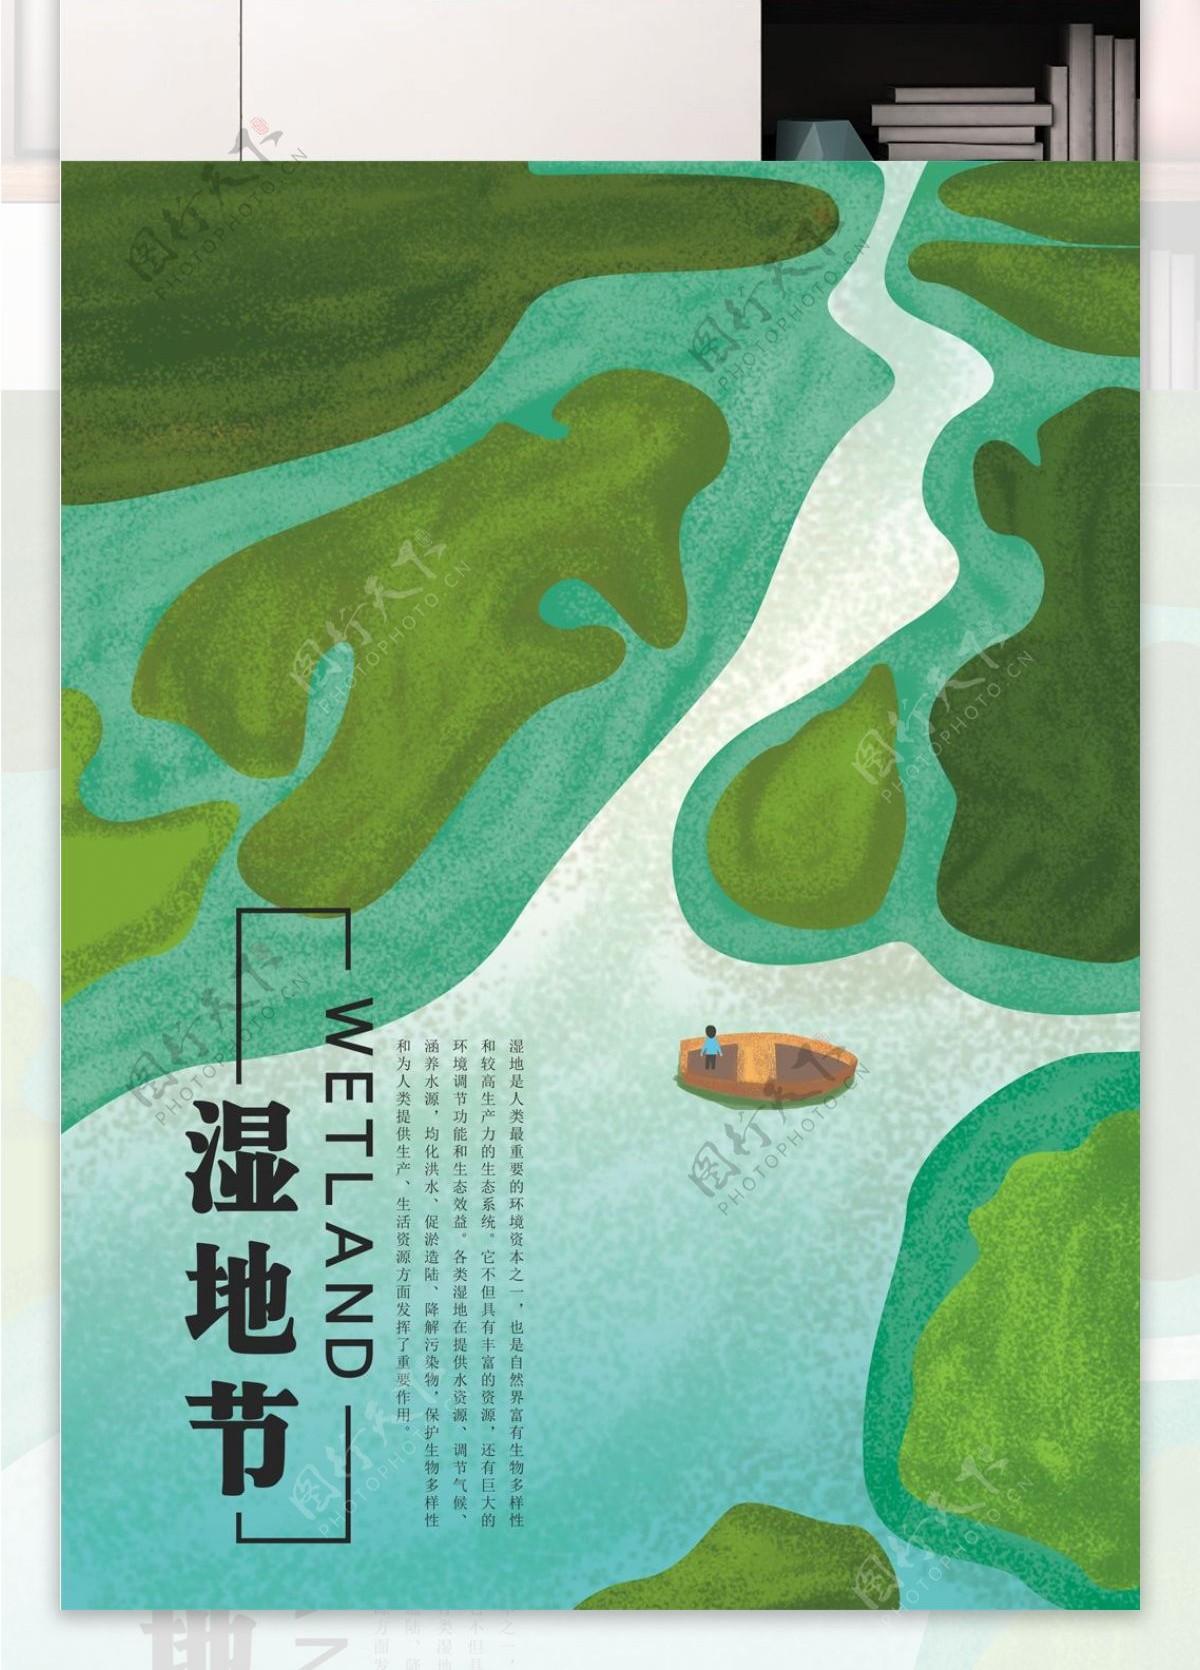 原创插画湿地节保护生态环境宣传节日海报